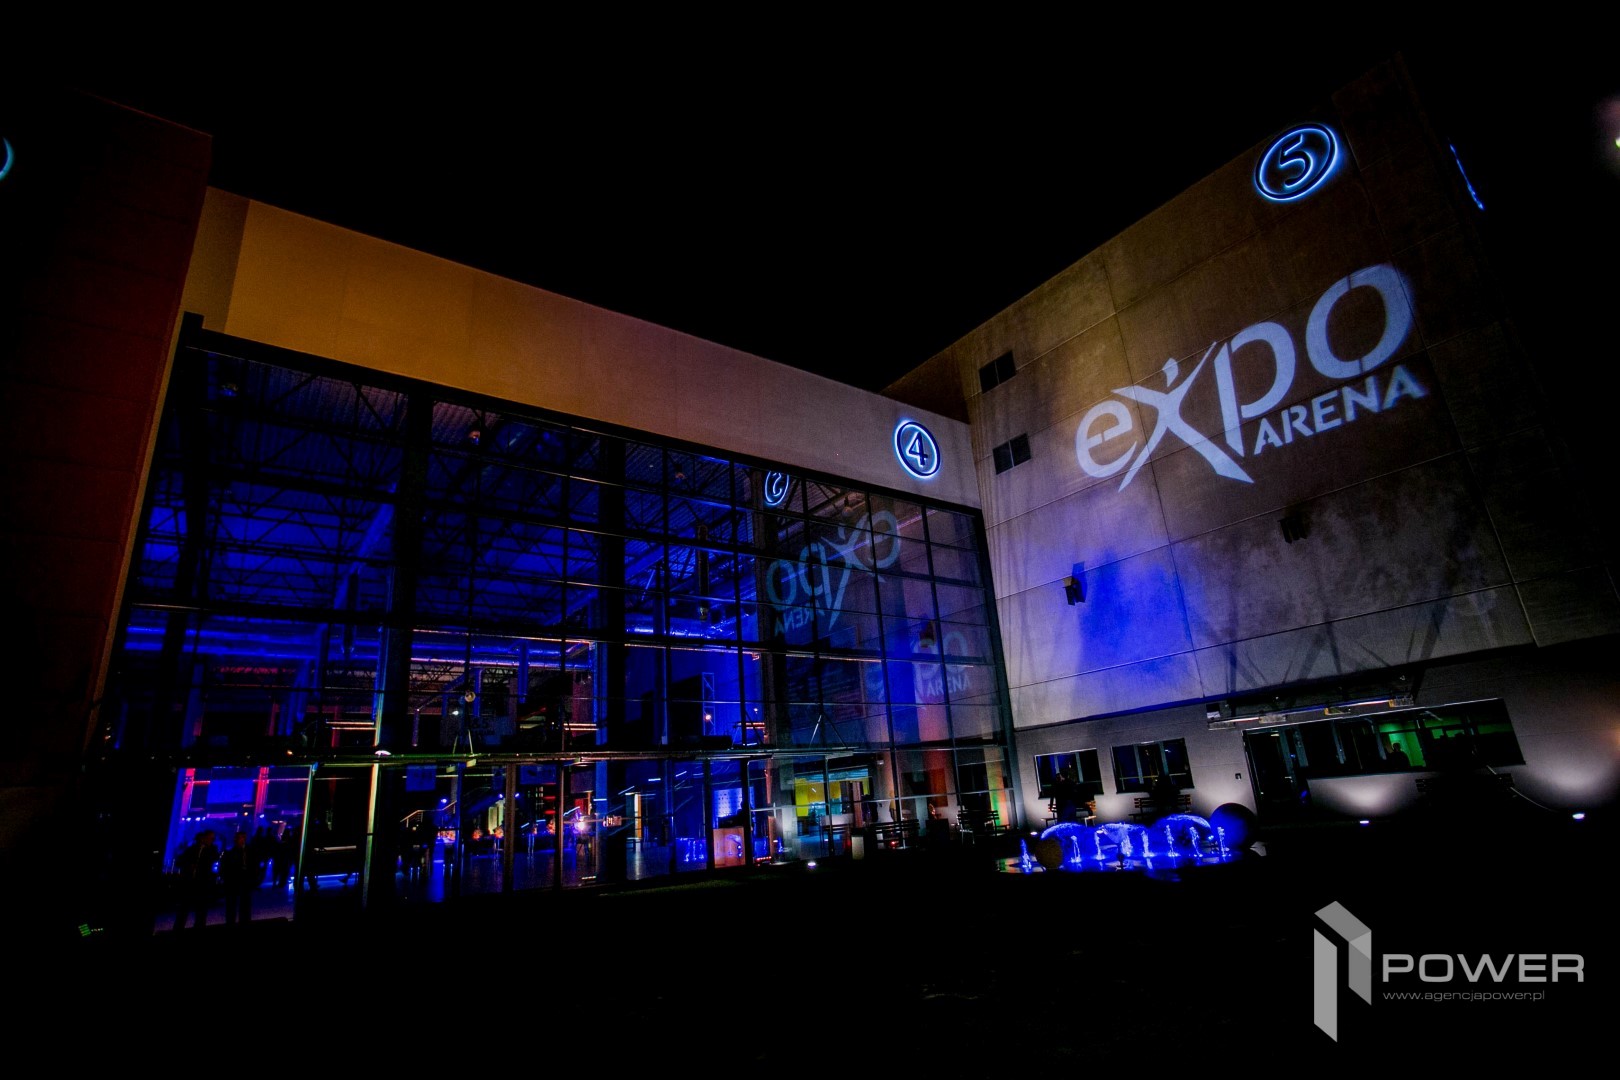 Expo Arena Gala Otwarcia 4